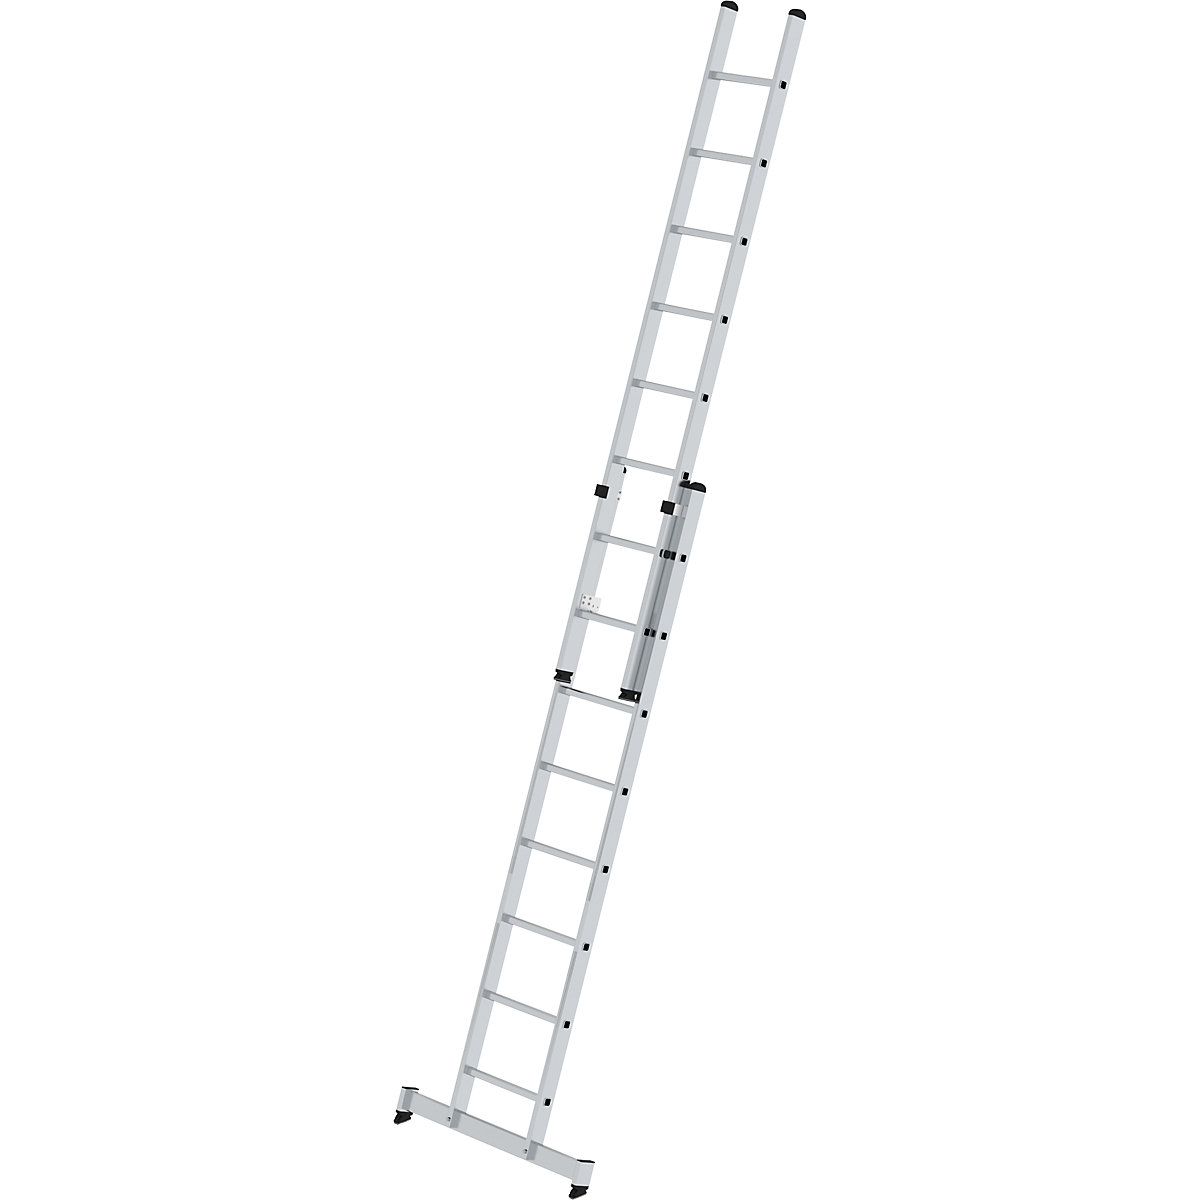 Escalera de mano de altura regulable – MUNK, escalera extensible de 2 tramos, 2 x 8 peldaños estrechos, con traviesa nivello®-8